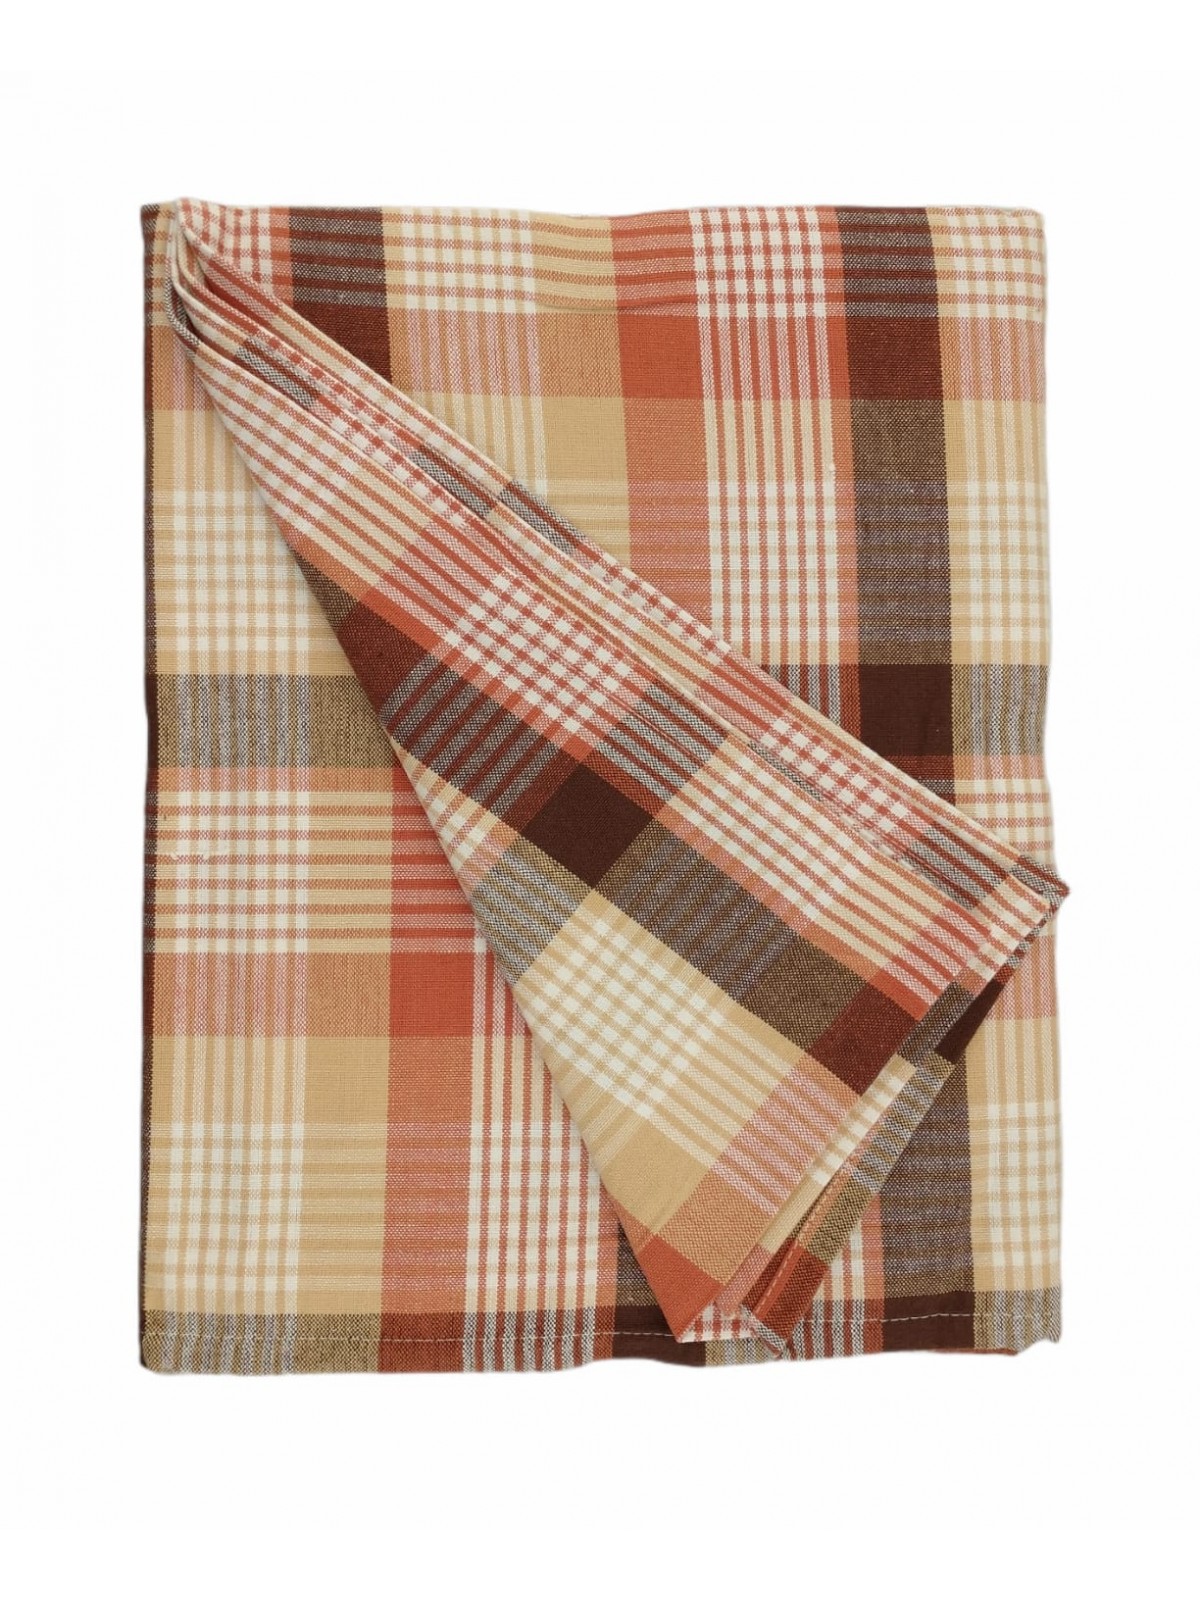 Mantel rectangular x6 Rojo 140x180 ref. Vainilla sin servilletas